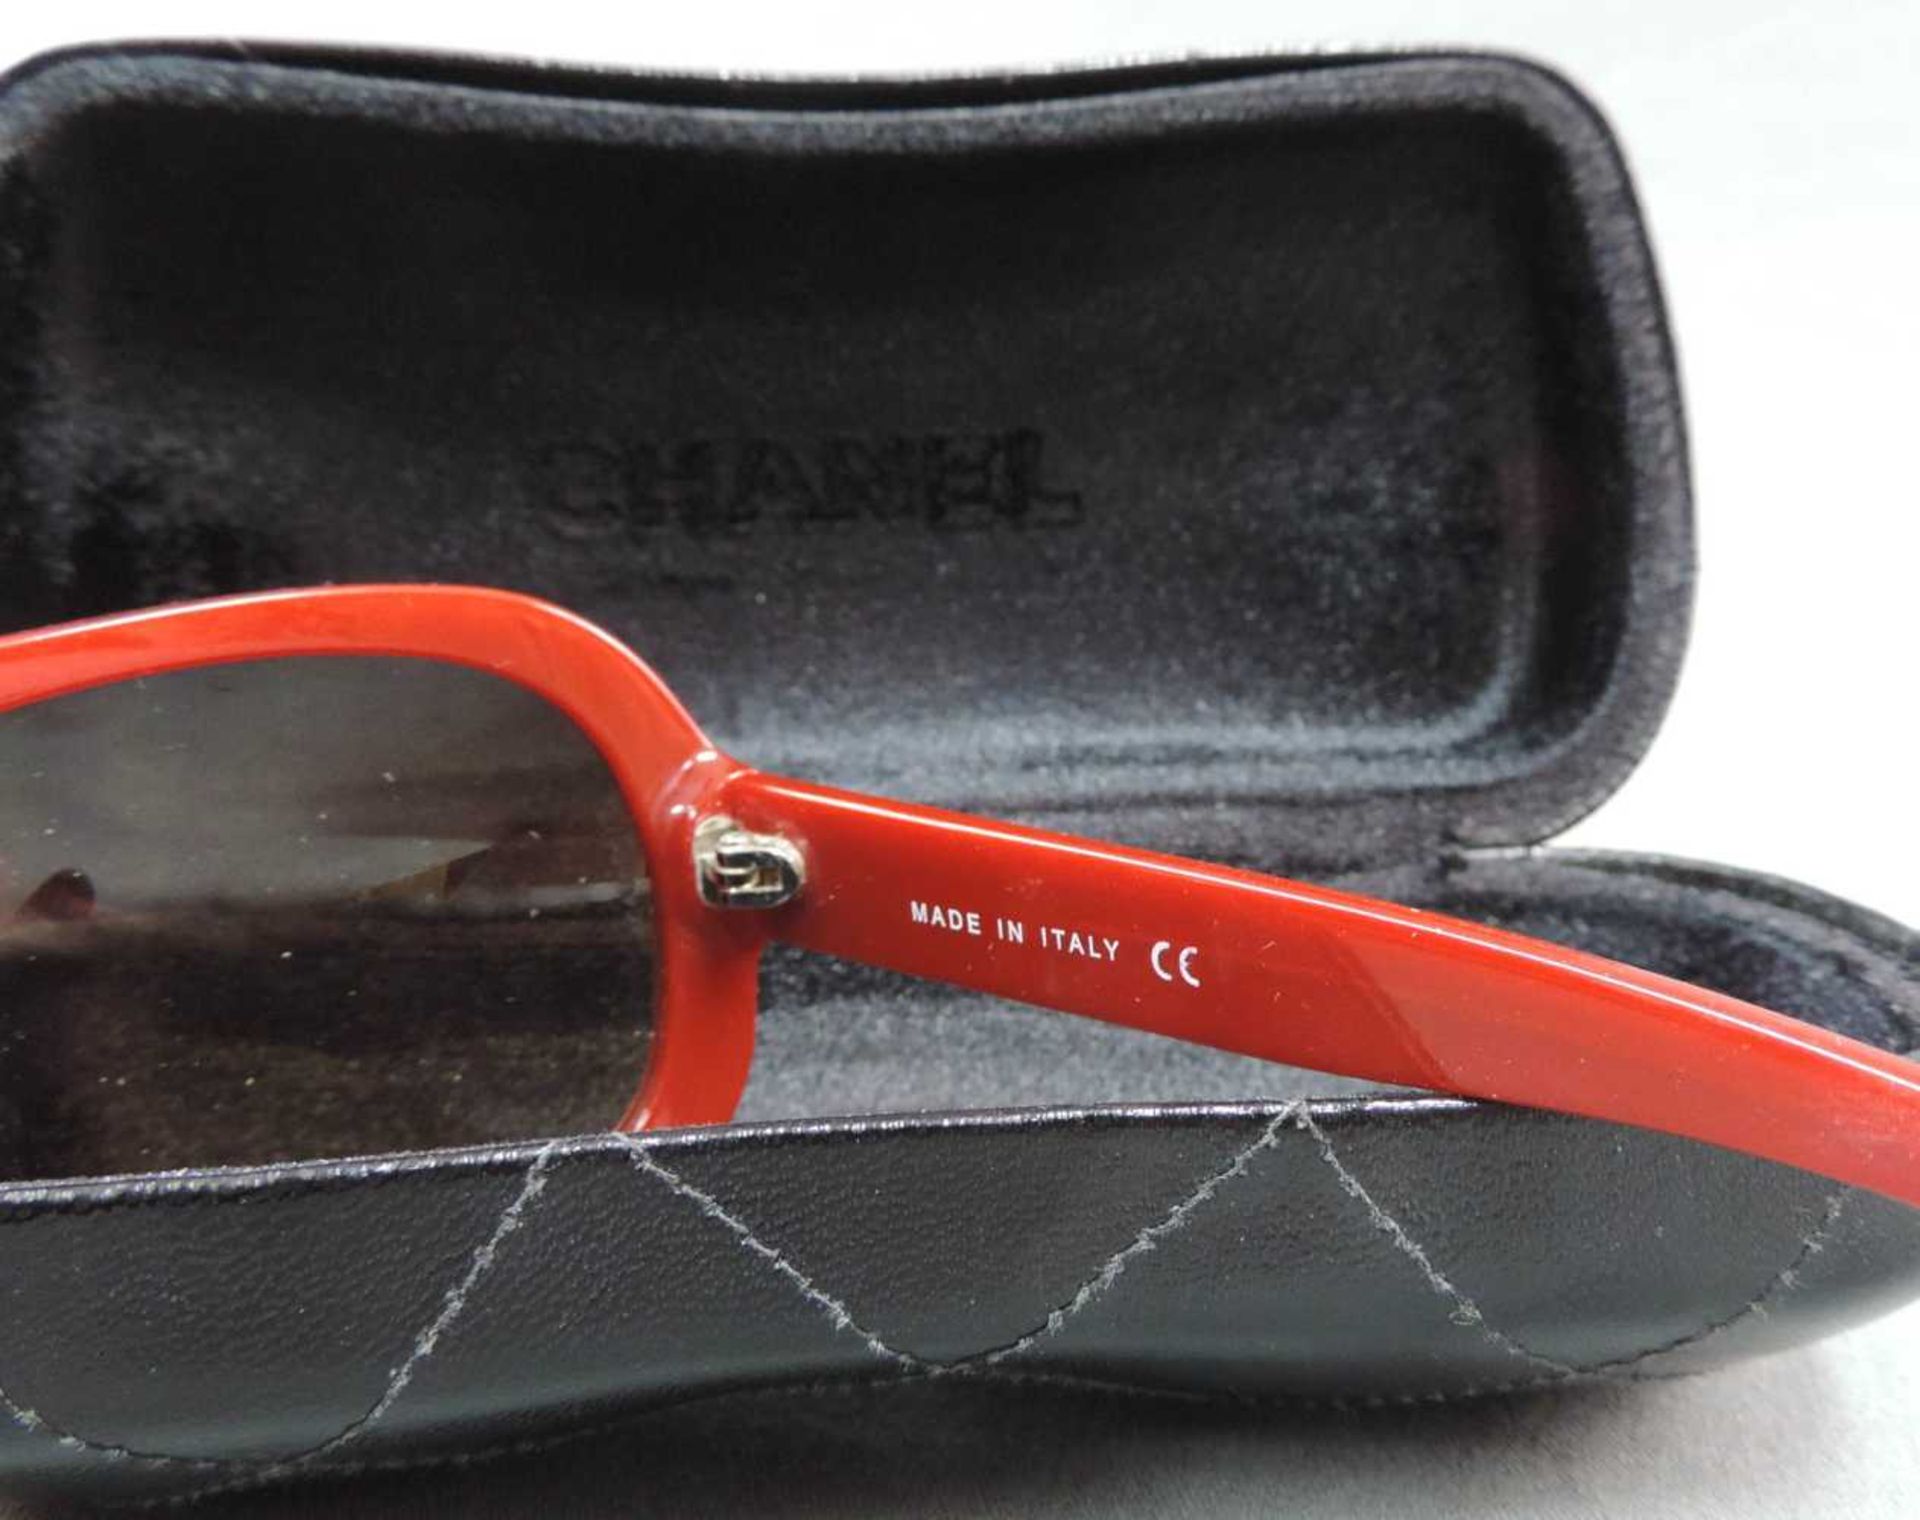 Chanel Sonnenbrille. Mit Brillenetui. Made in Italy. Gebrauchsspuren. Chanel sunglasses. With - Bild 2 aus 2